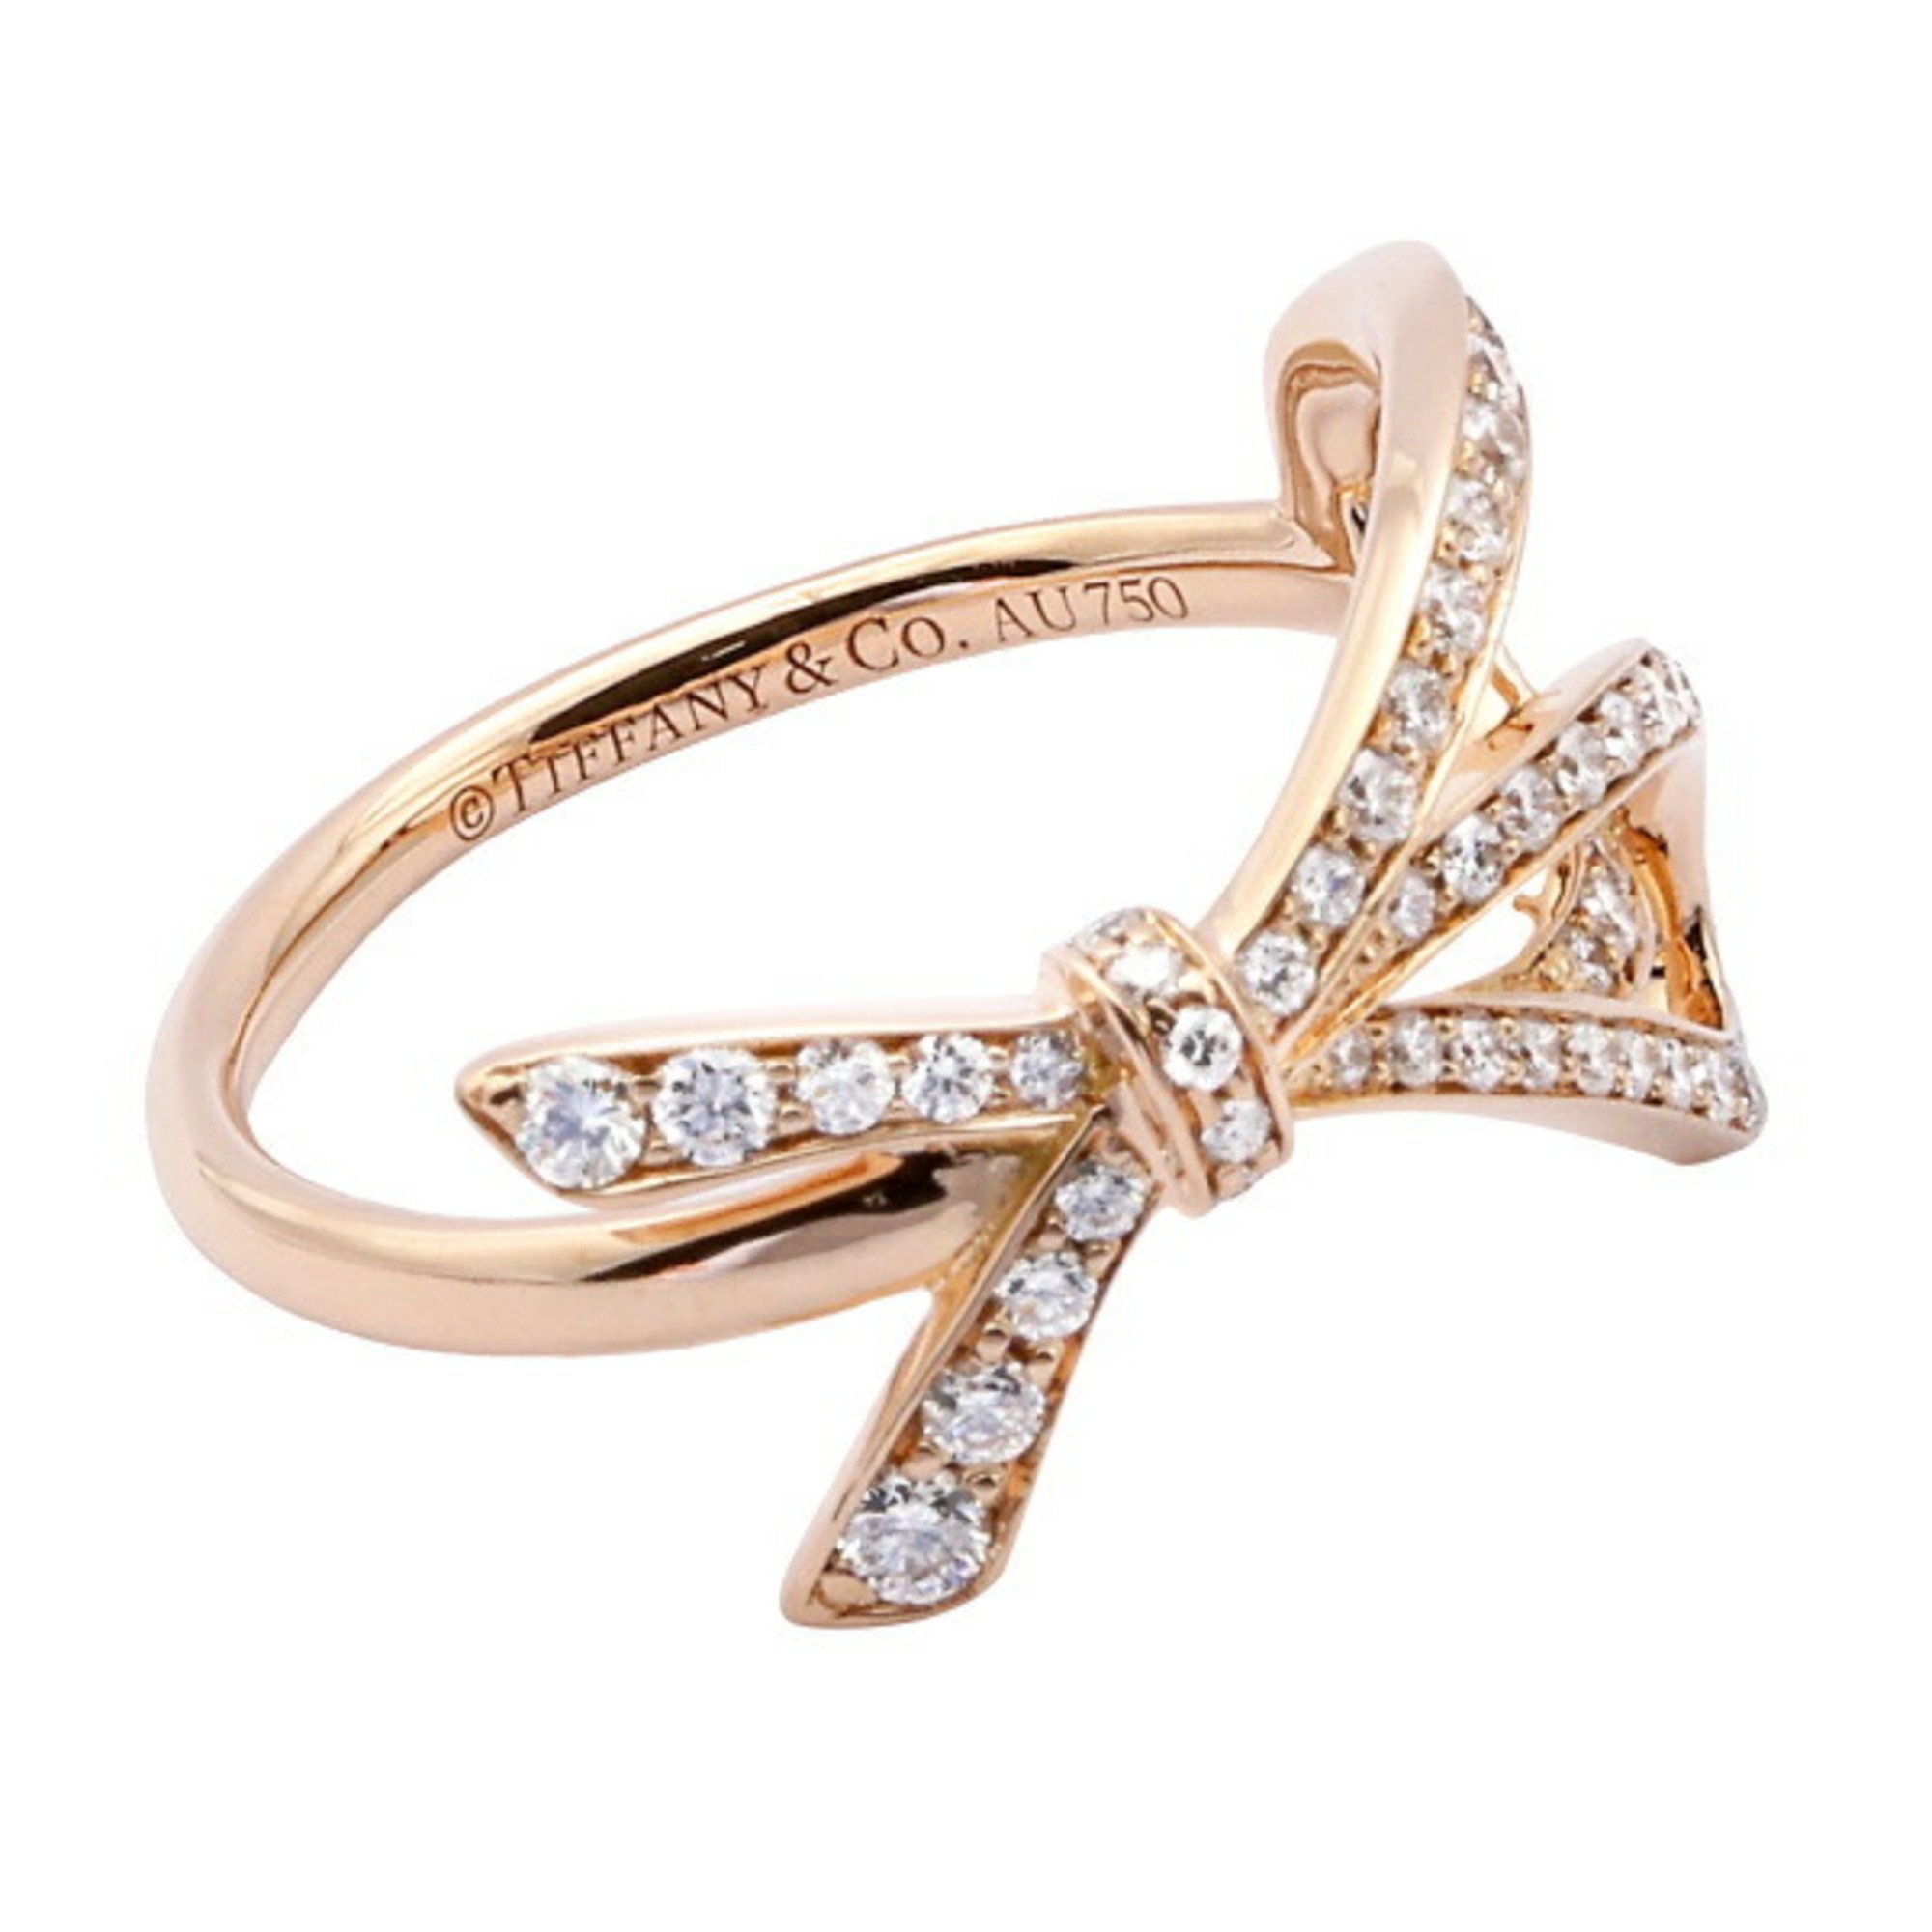 Tiffany Ribbon Bow K18PG Pink Gold Ring